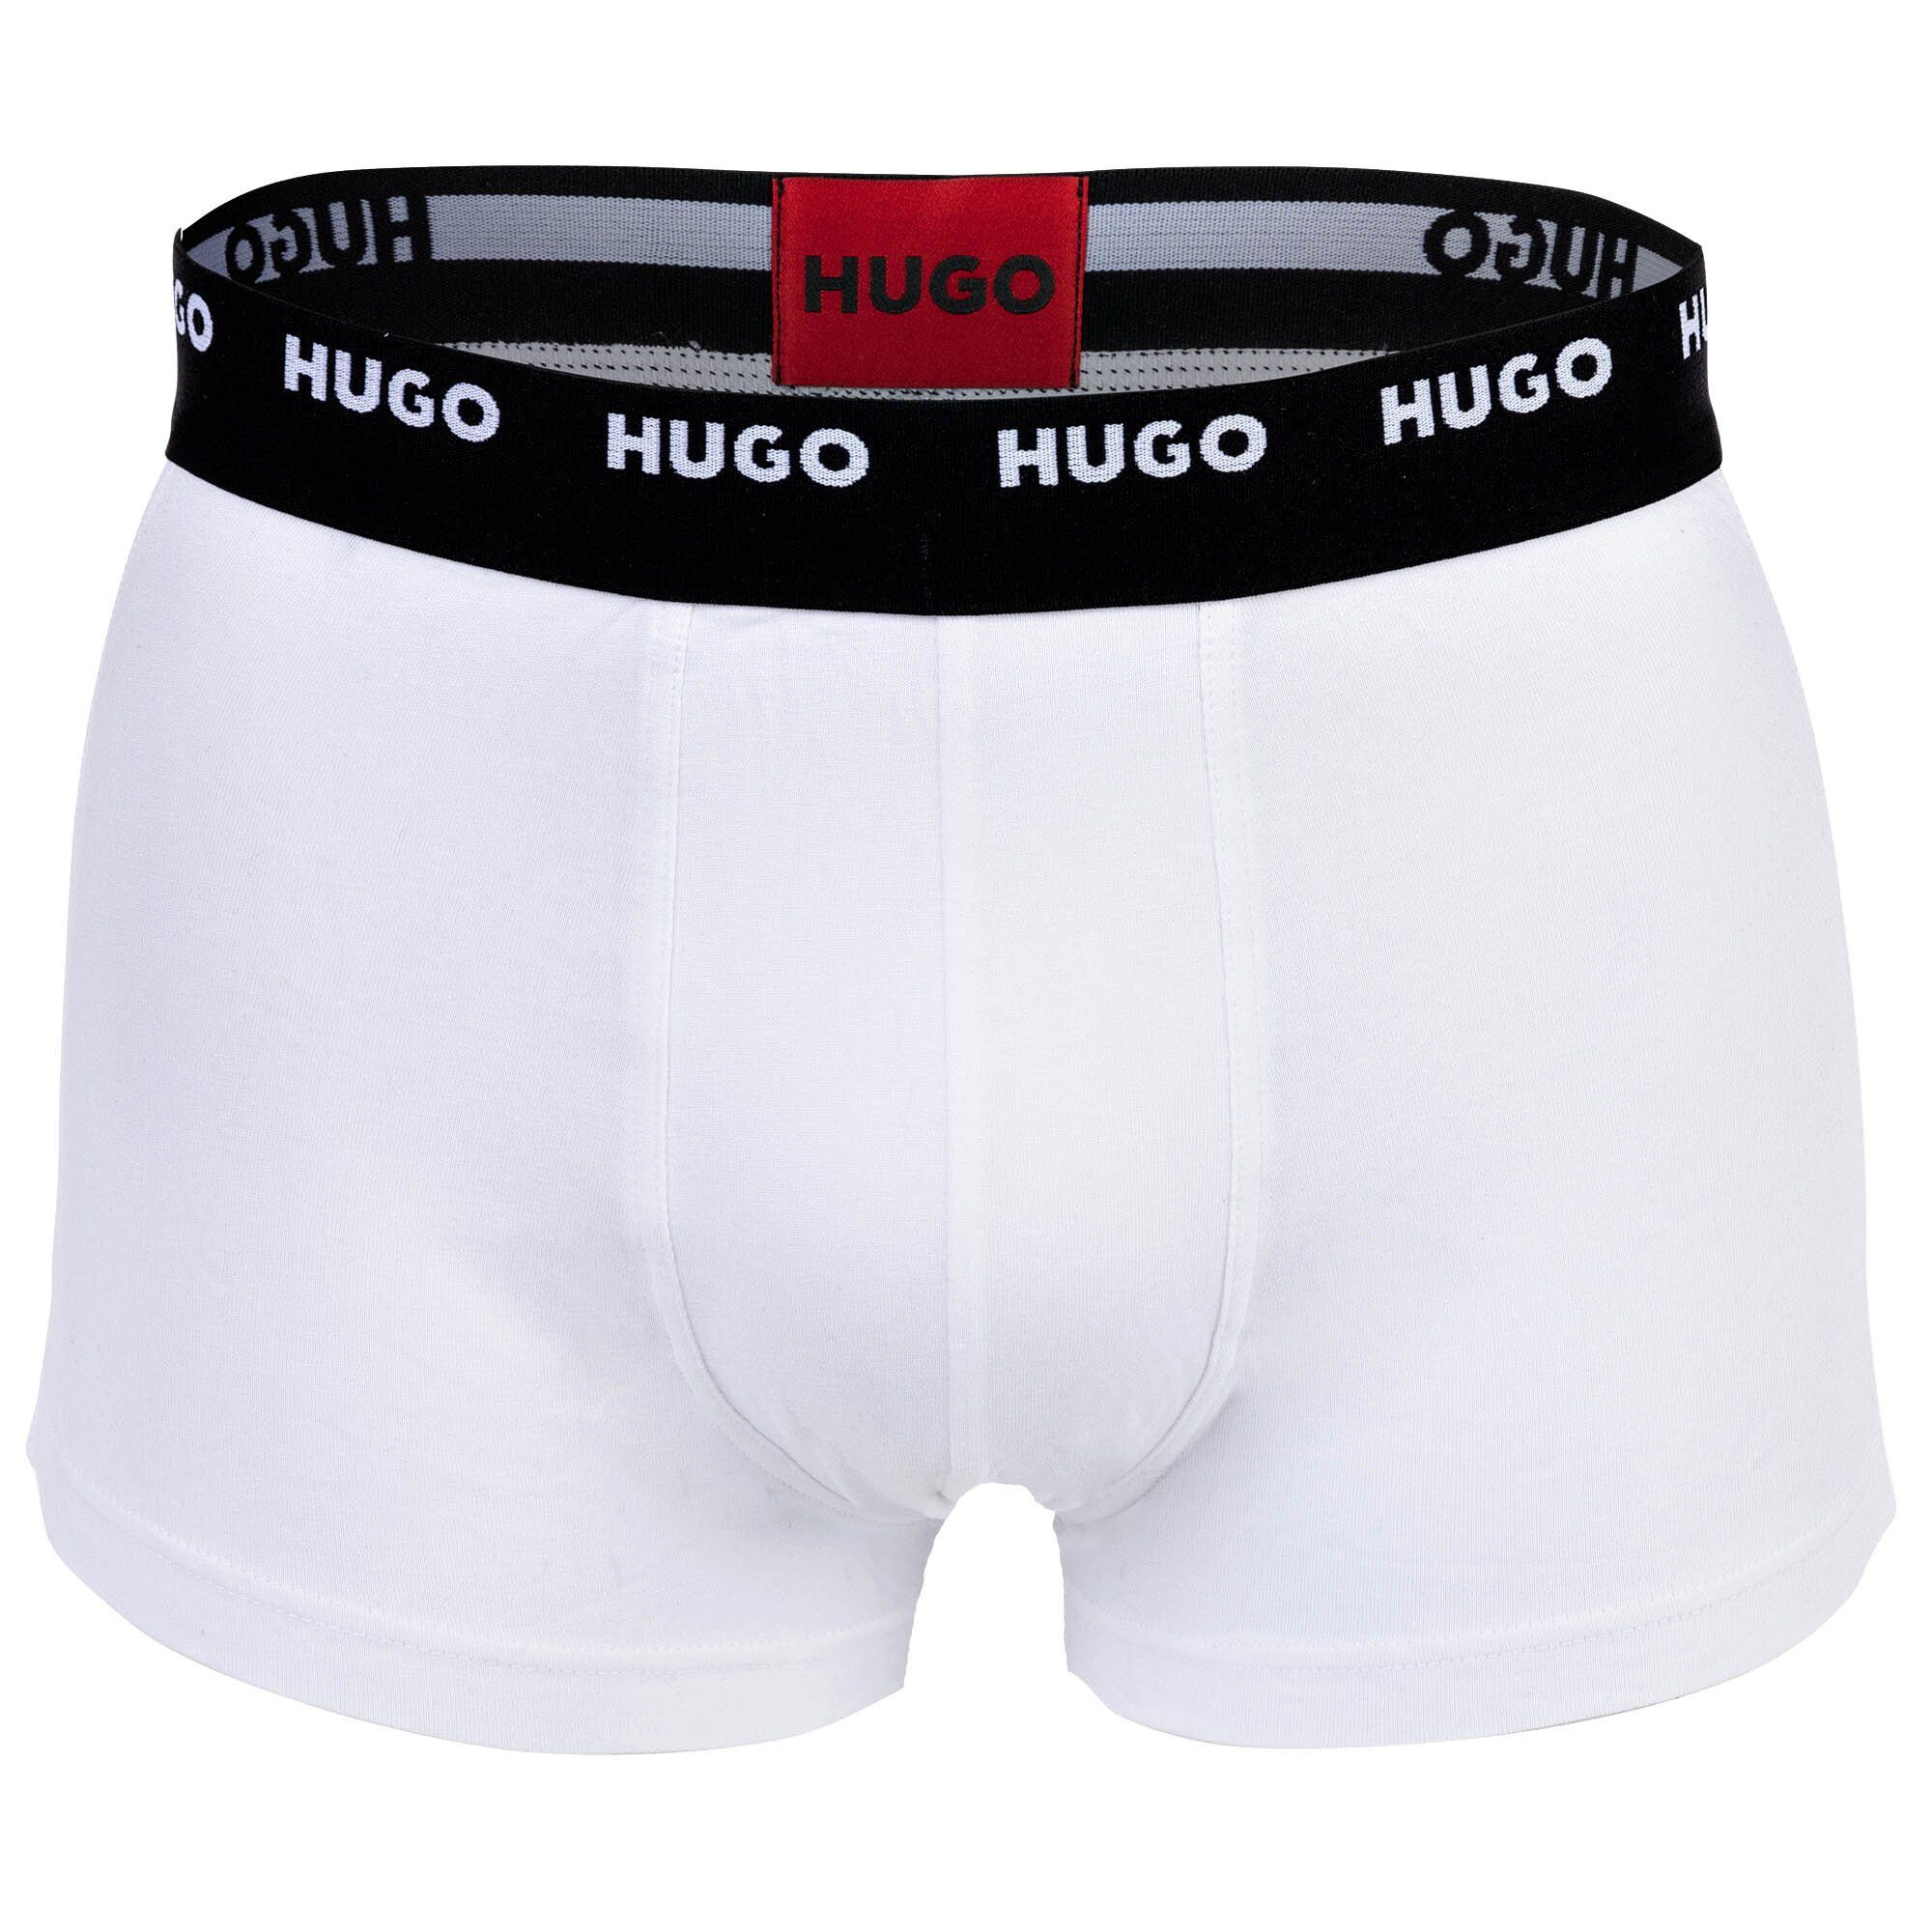 HUGO Boxer Pack Shorts, Boxer - Schwarz/Rot/Blau Trunks Herren Five 5er Pack